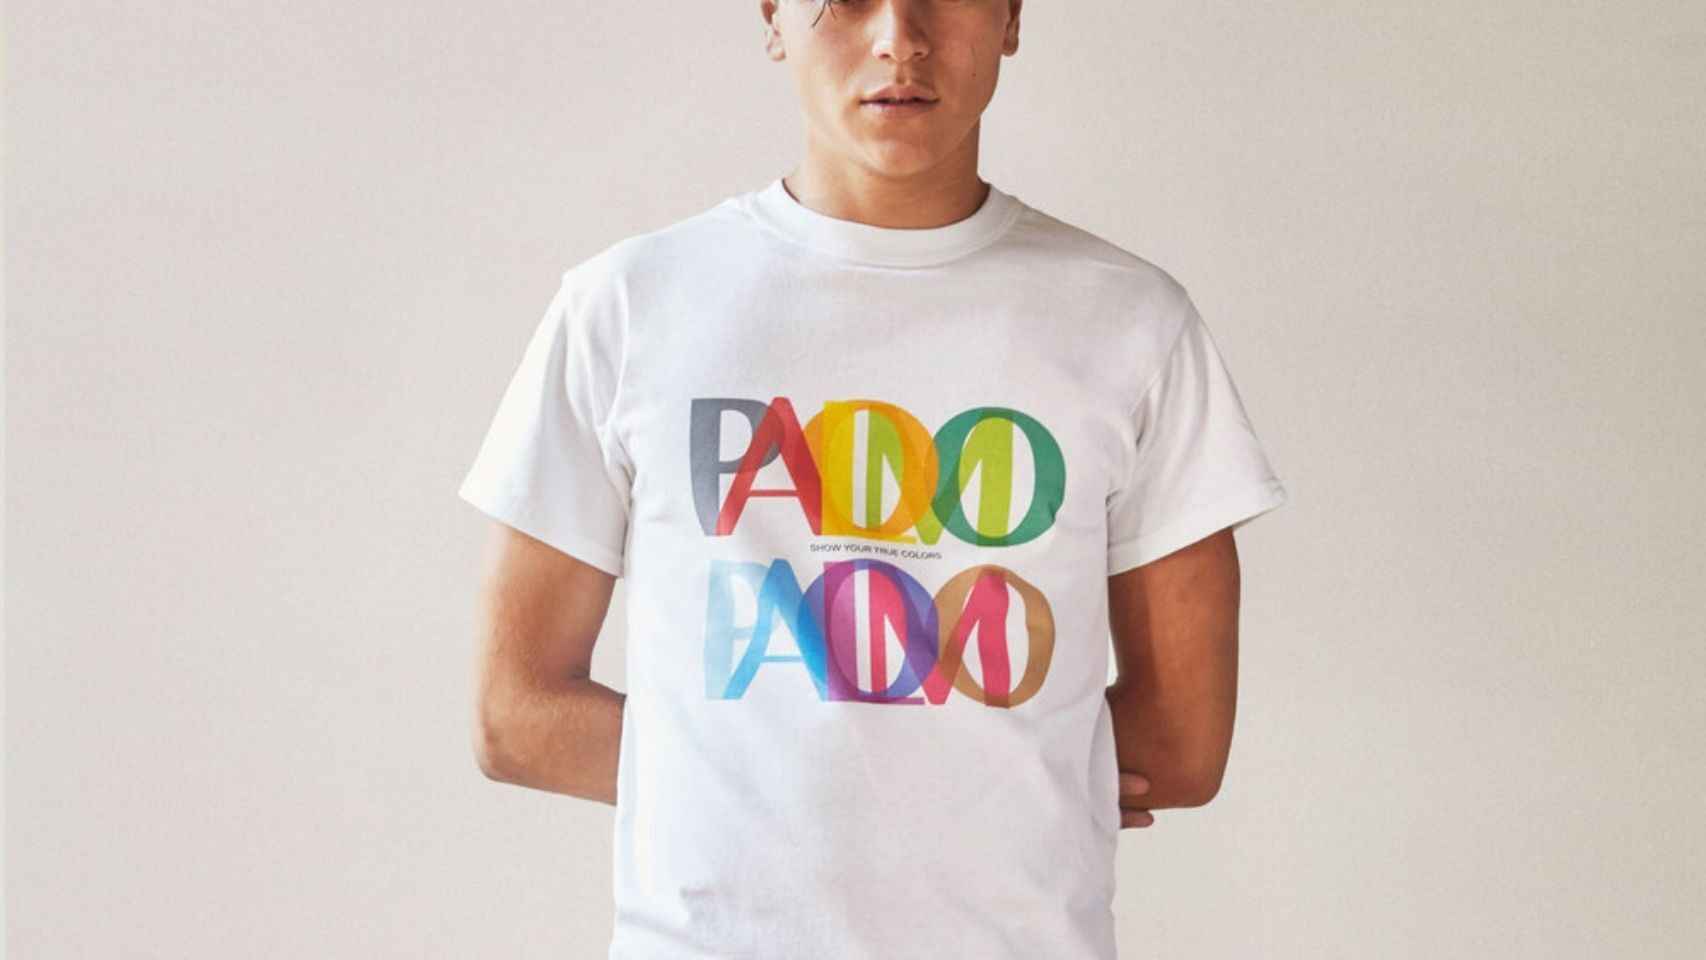 La colección ideada por Palomo con la plataforma Rescate se centra en esta colorida camiseta unisex.